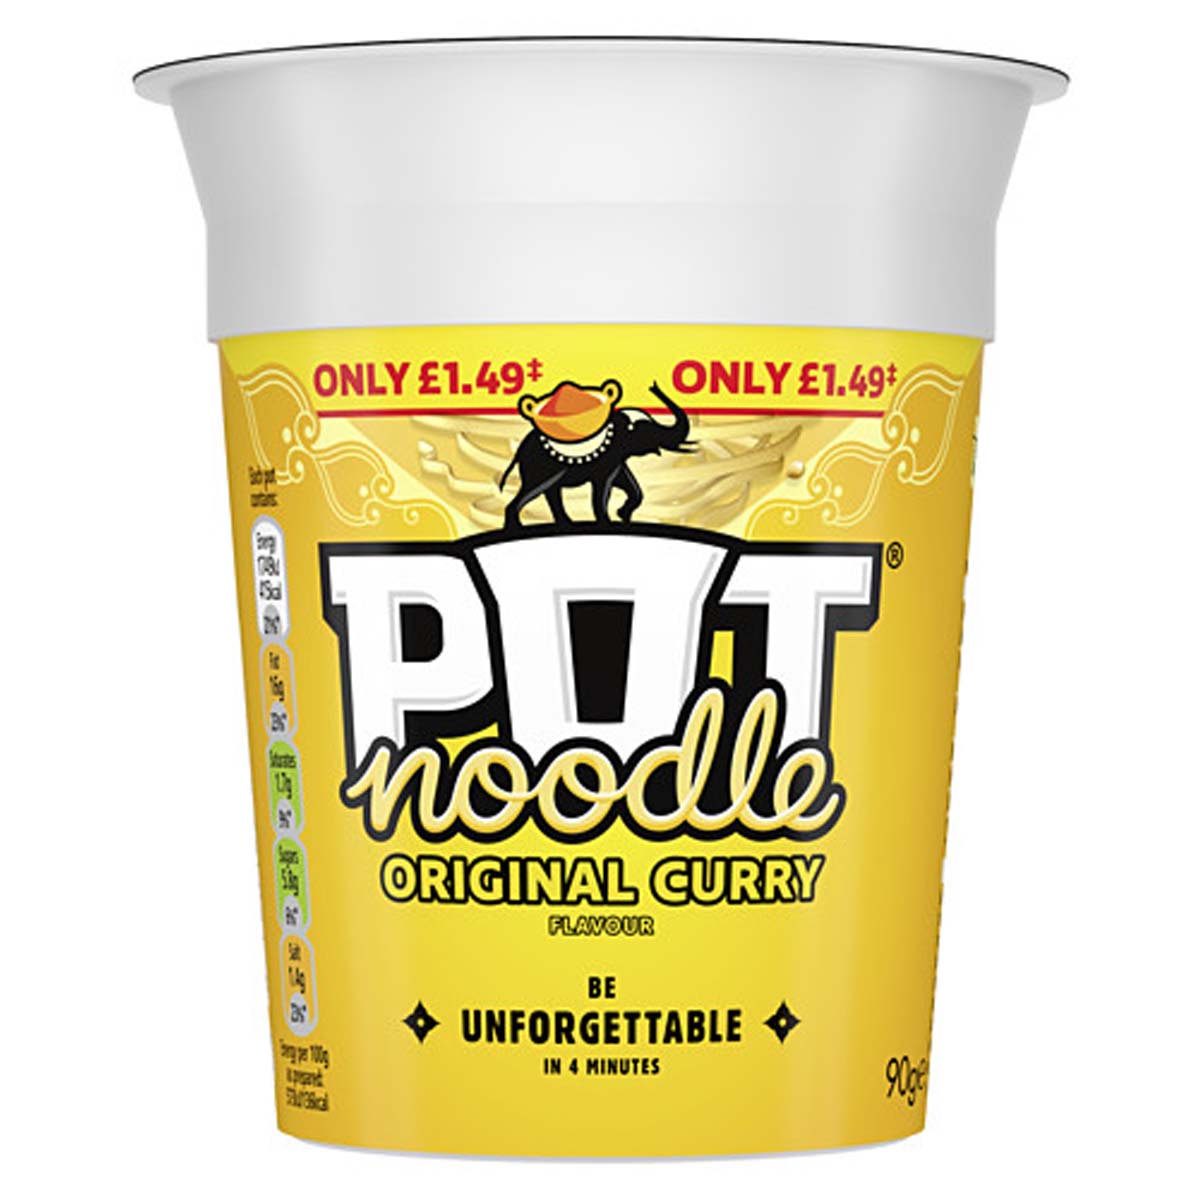 Pot Noodle - Original Curry - 90g.